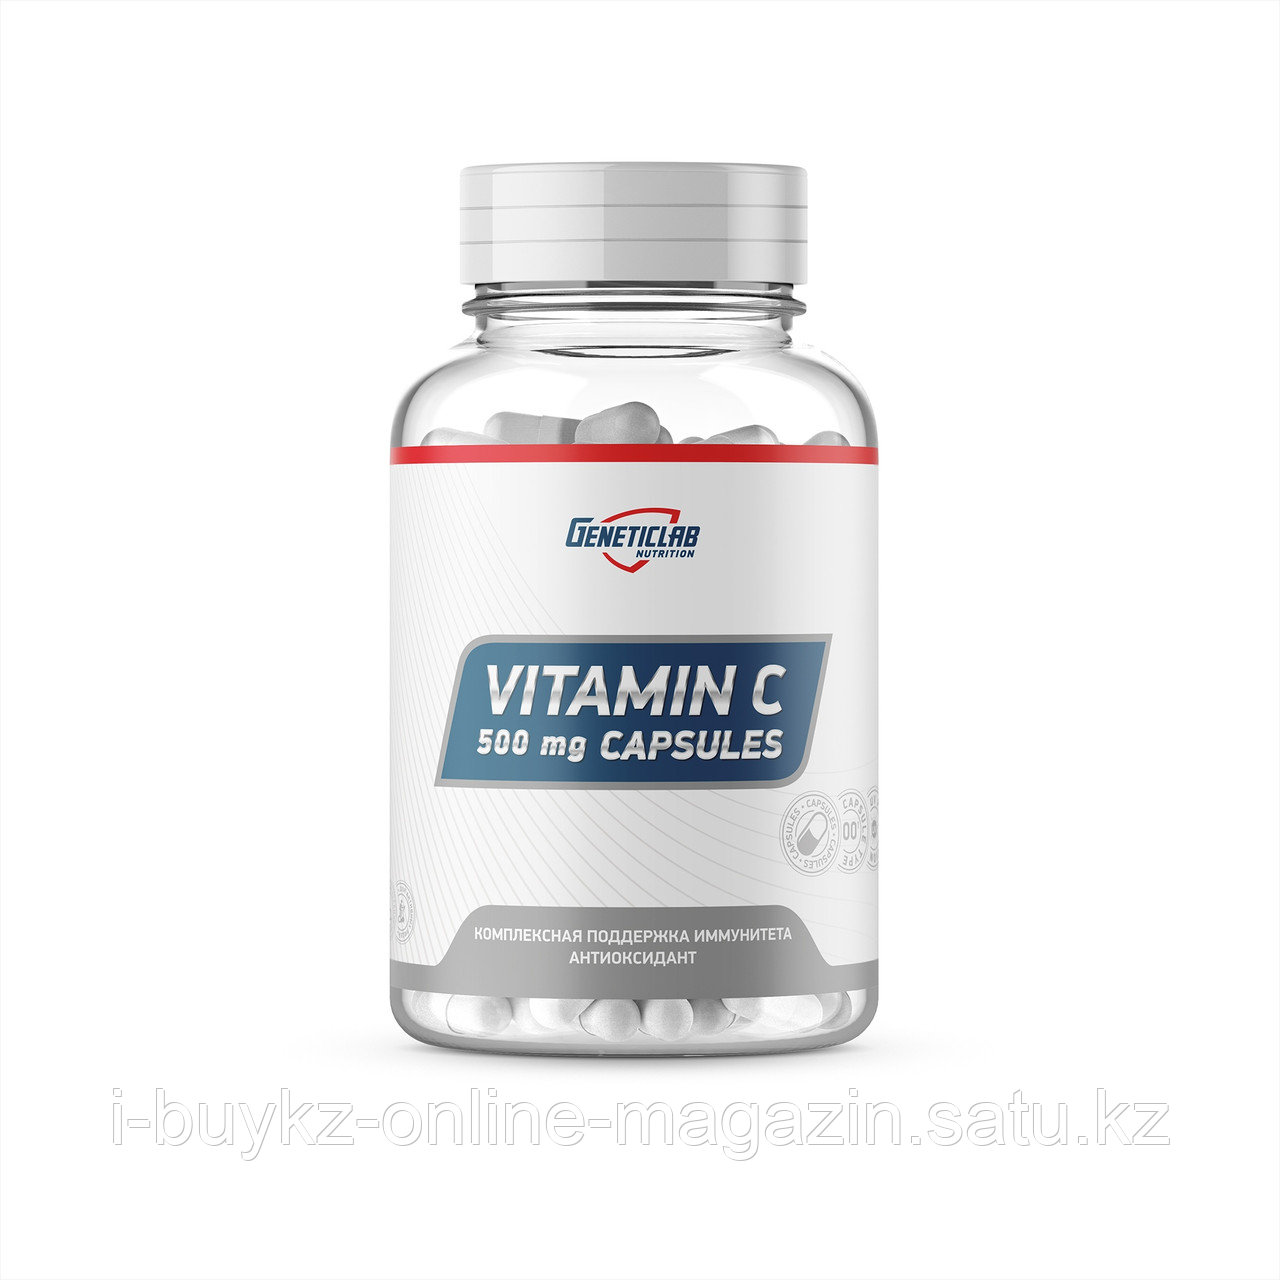 Витамин C GeneticLab